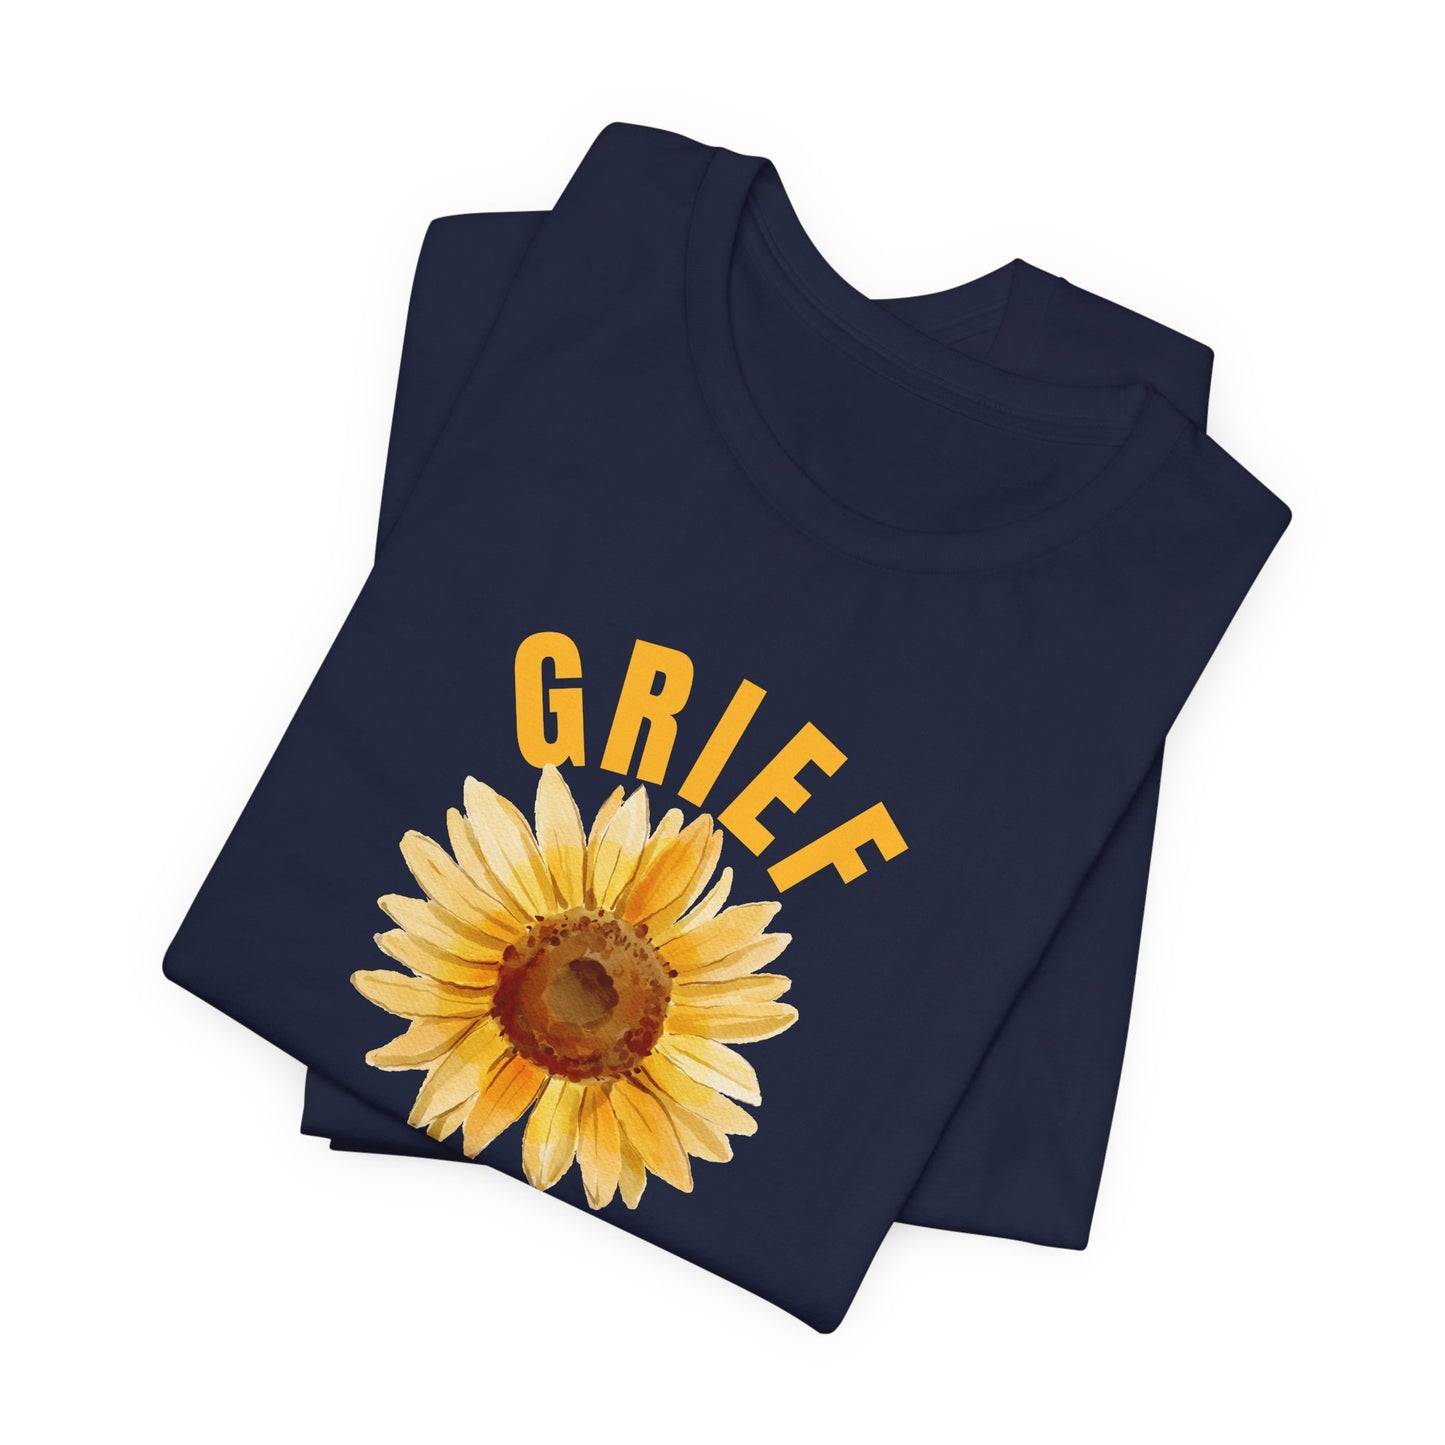 Navy Bella Canvas 3001 t-shirt. Grief Survivor message with sunflower design.